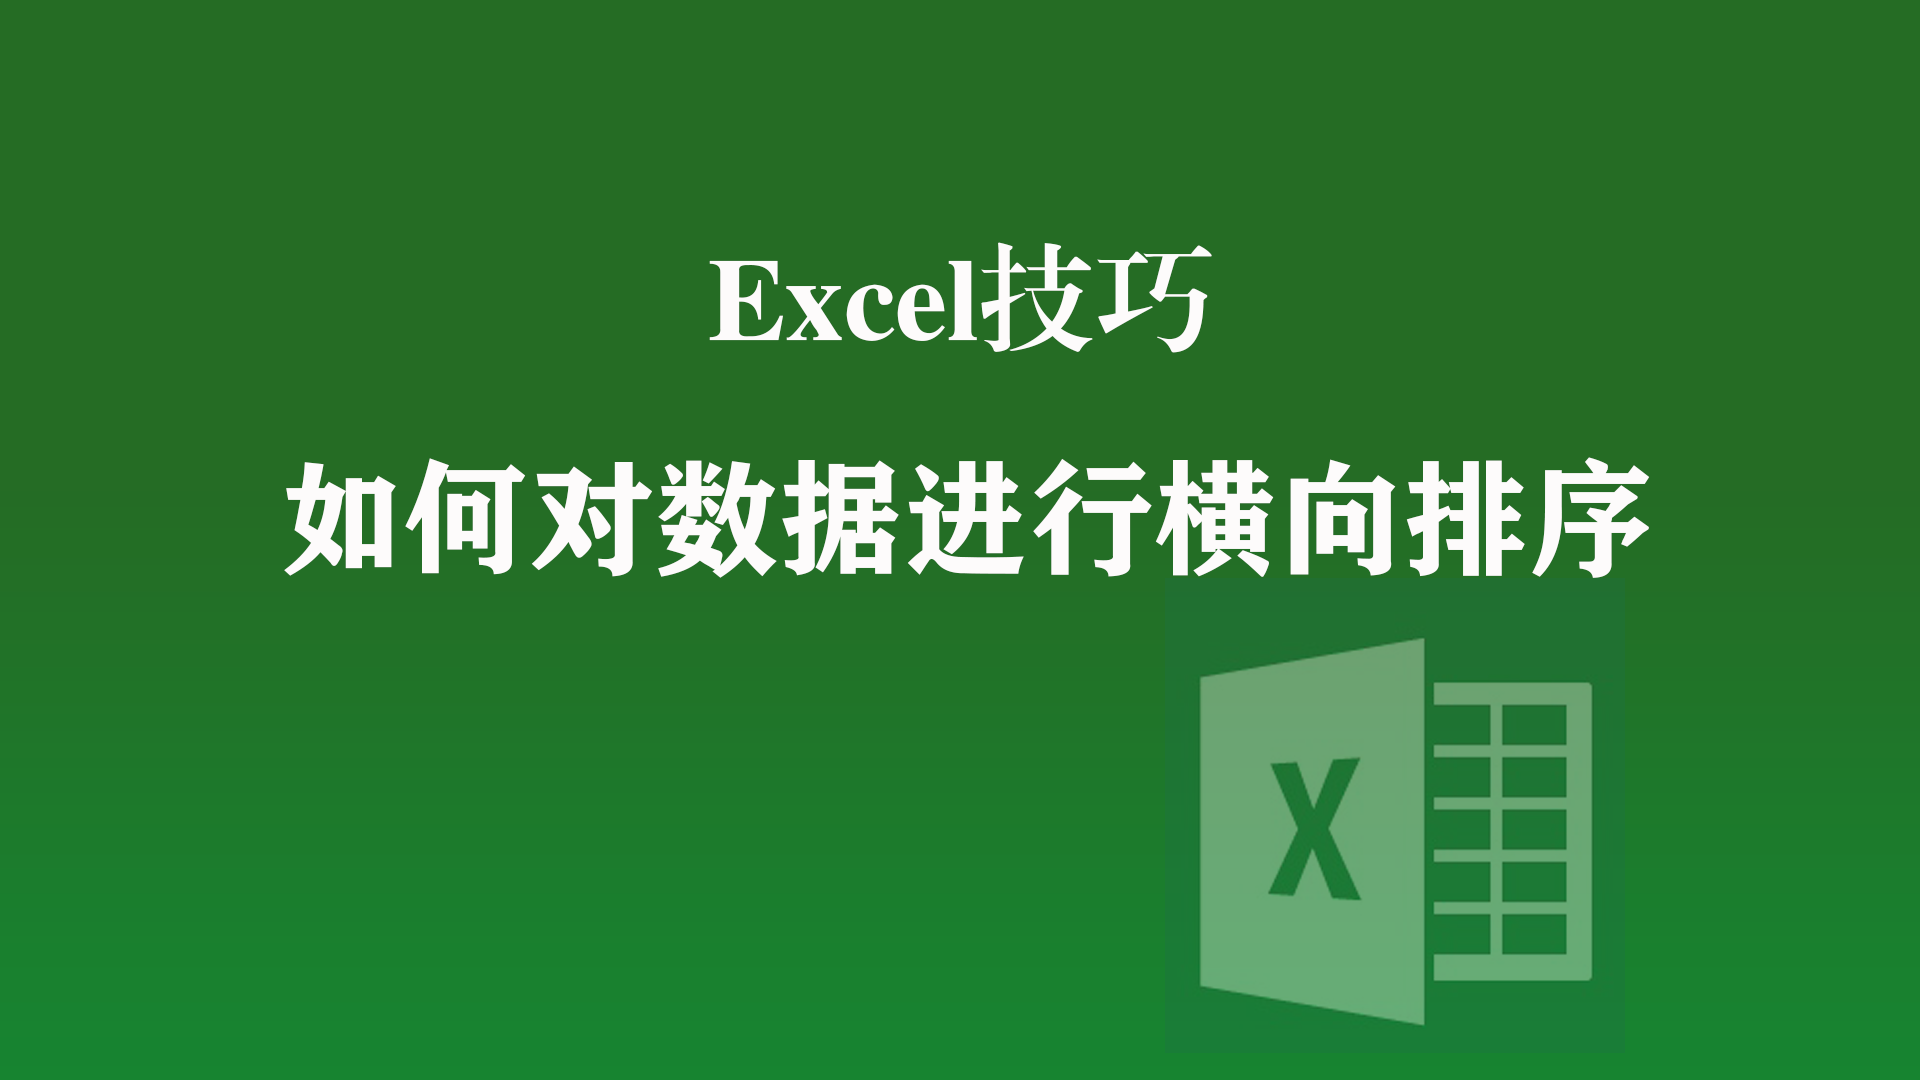 Excel技巧: 对数据进行横向排序的方法